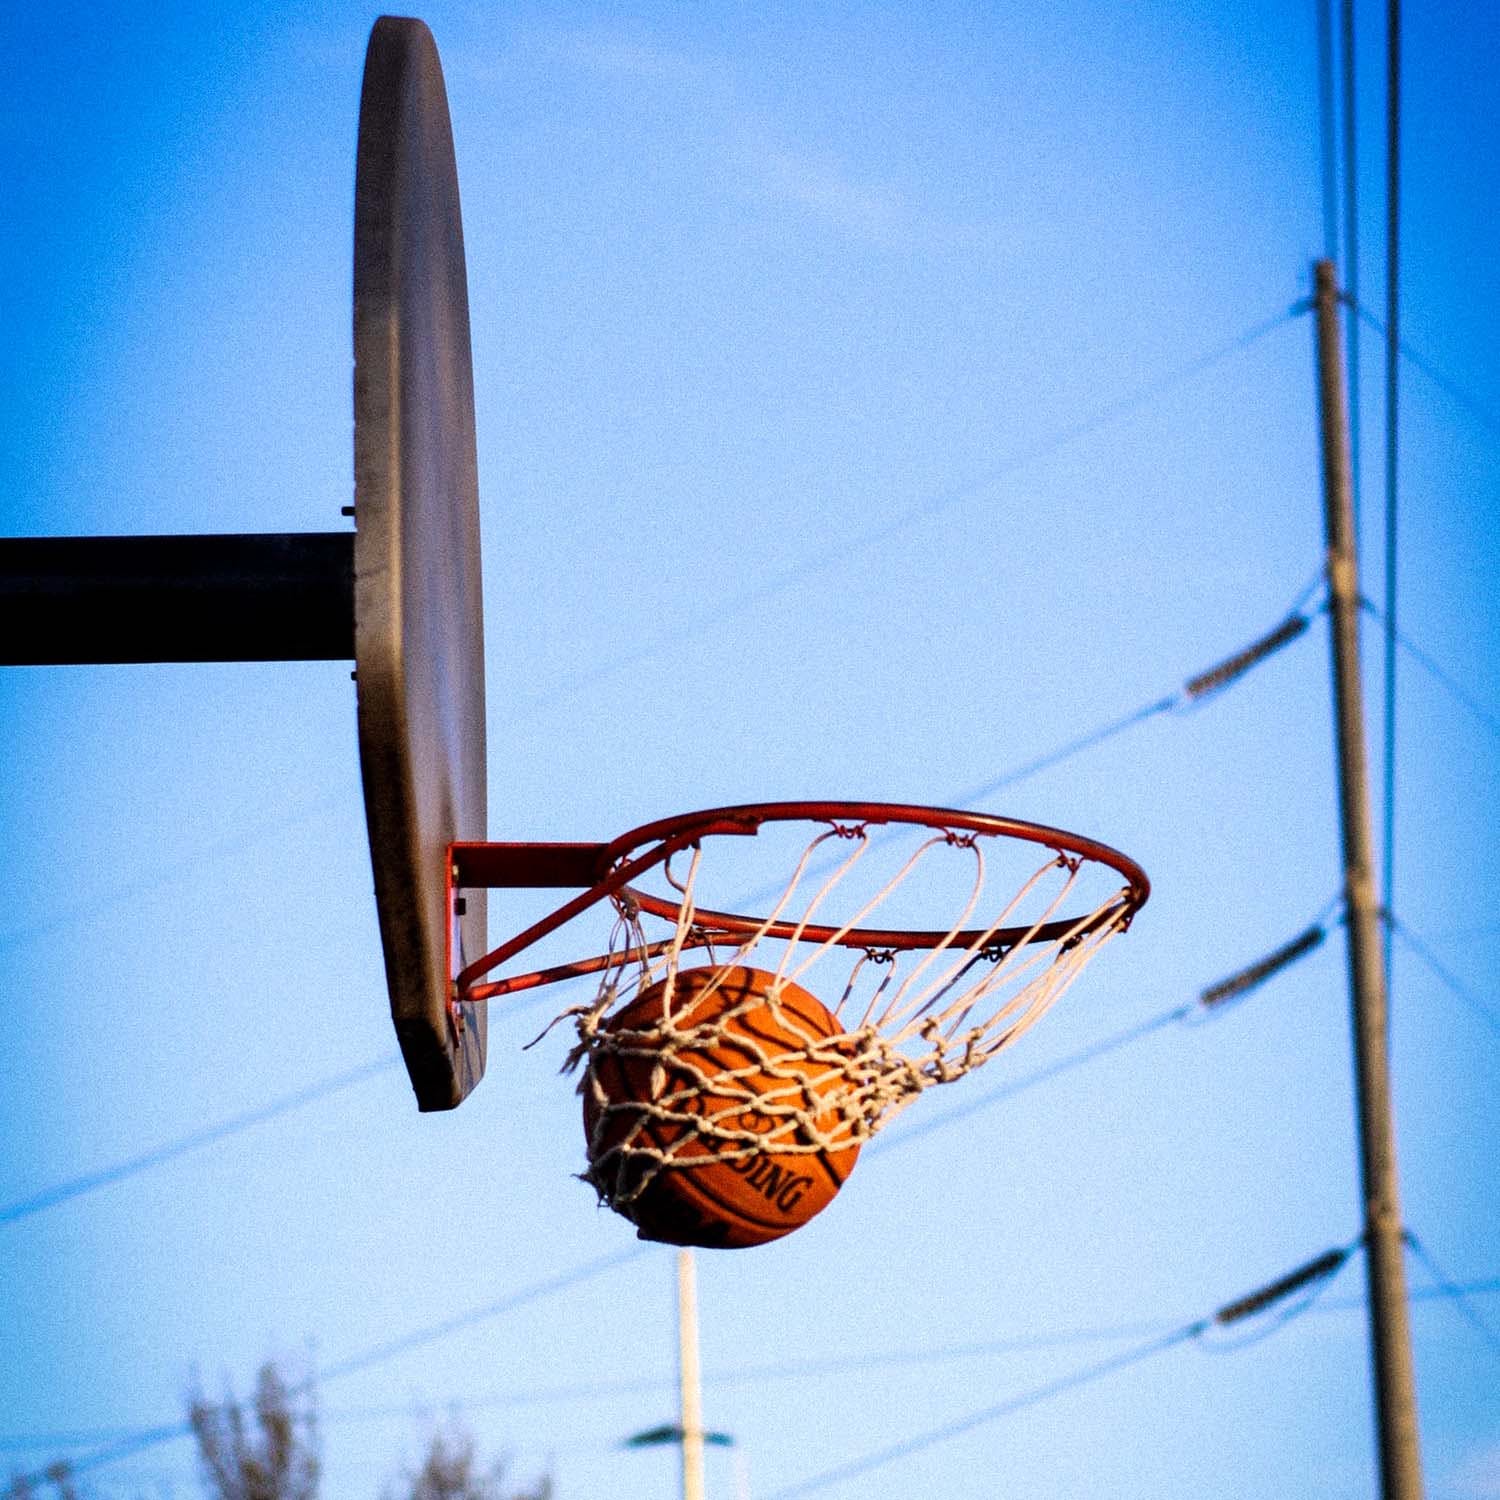 Basketball,Basketball hoop,Basketball court,Basketball,Sky,Streetball,Net,Team sport,Netball,Ball